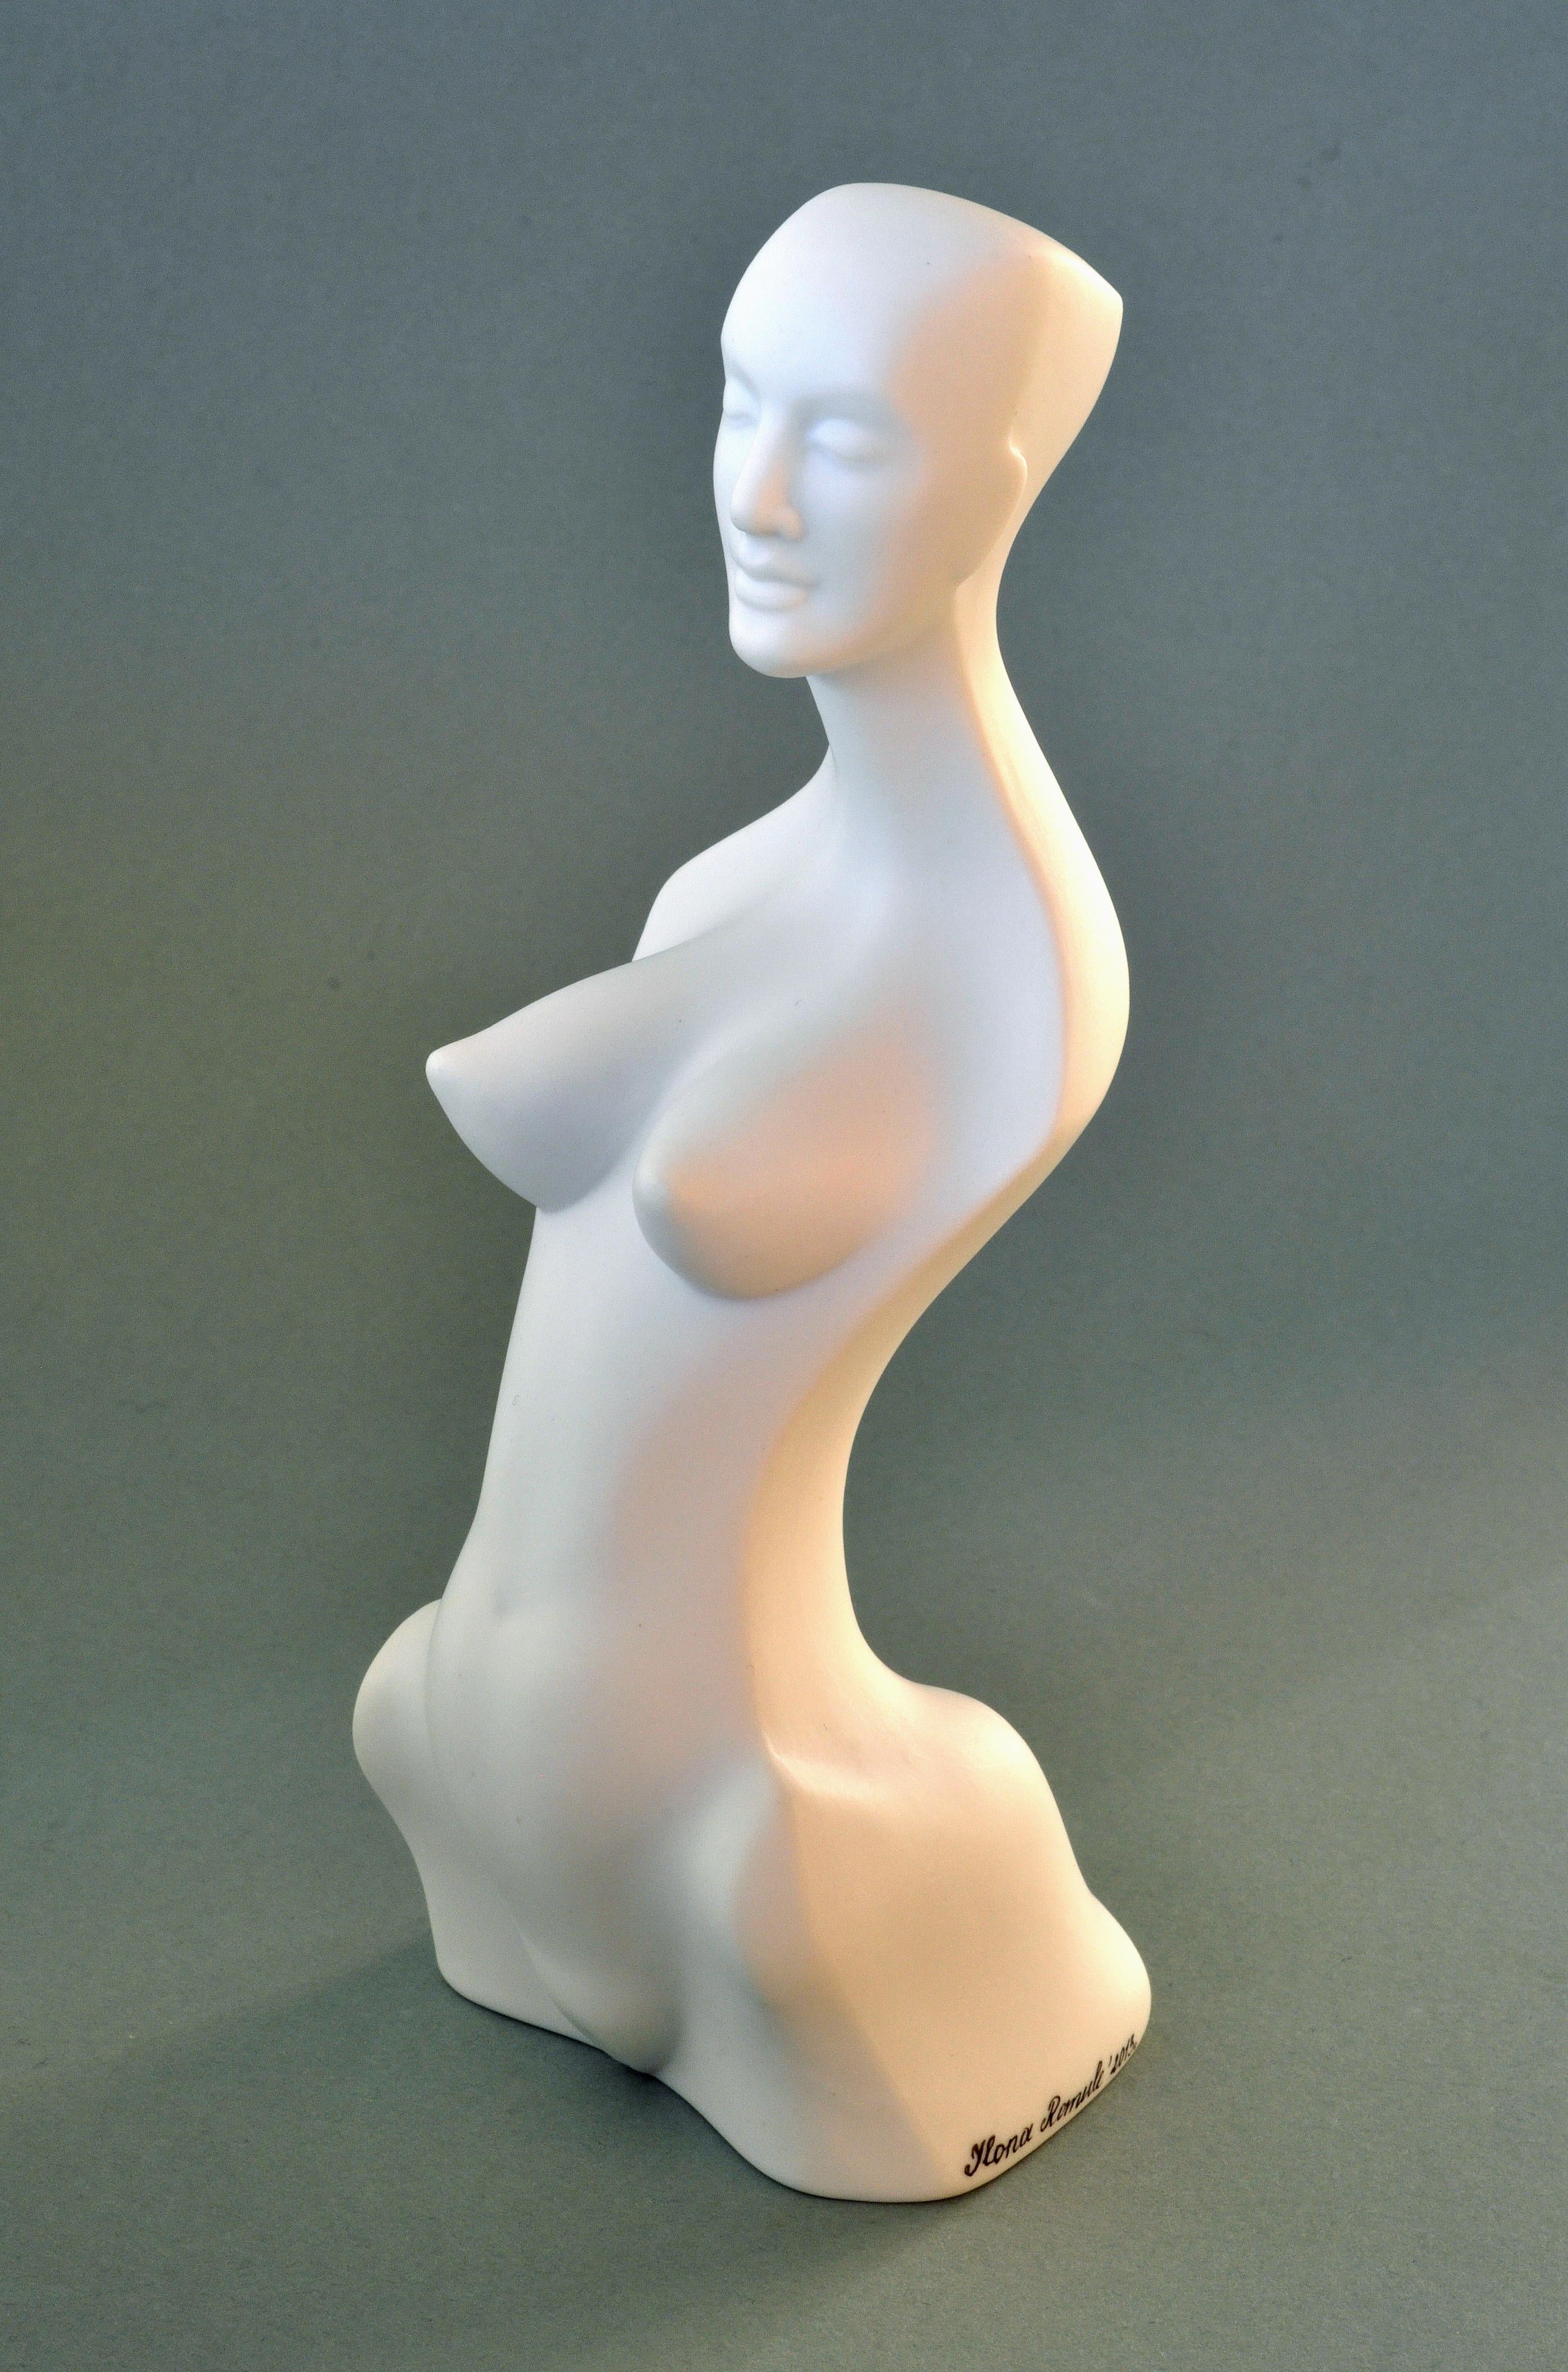 Frauenfigur. I

2013, Porzellan, H 17,5 cm

von Ilona Romule, führende Bildhauerin in Lettland

Die 